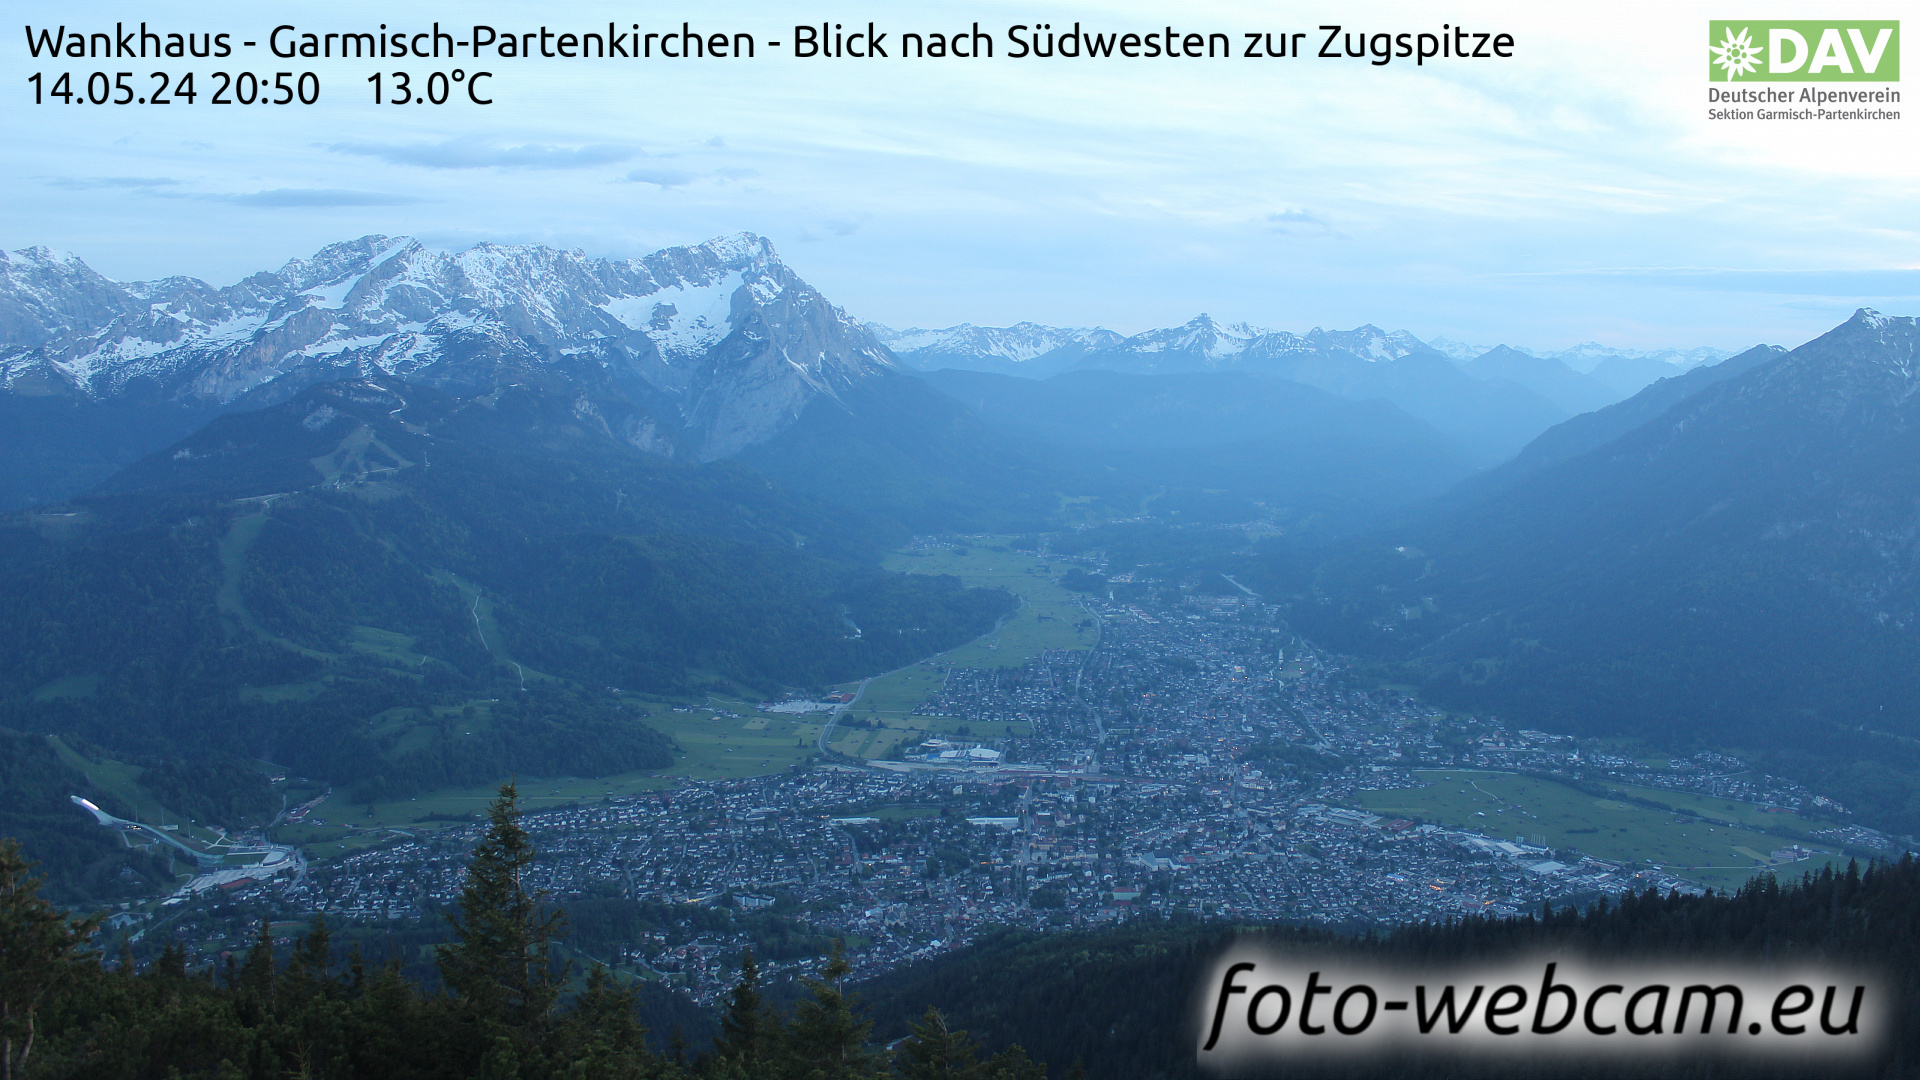 Garmisch-Partenkirchen Sa. 20:51